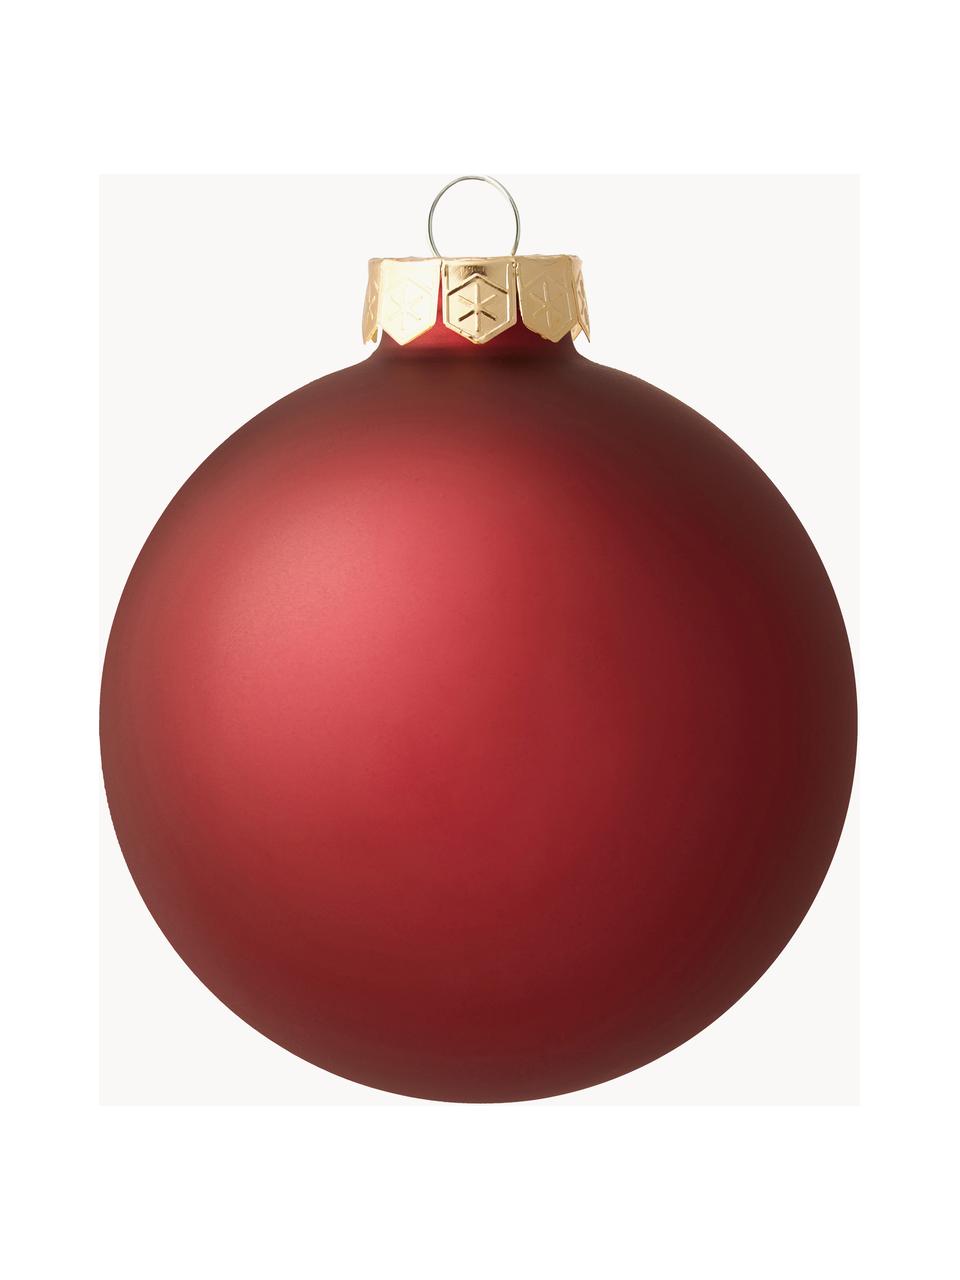 Sada vánočních ozdob Globe, 4 díly, Tmavě červená, Ø 4 cm, 16 ks